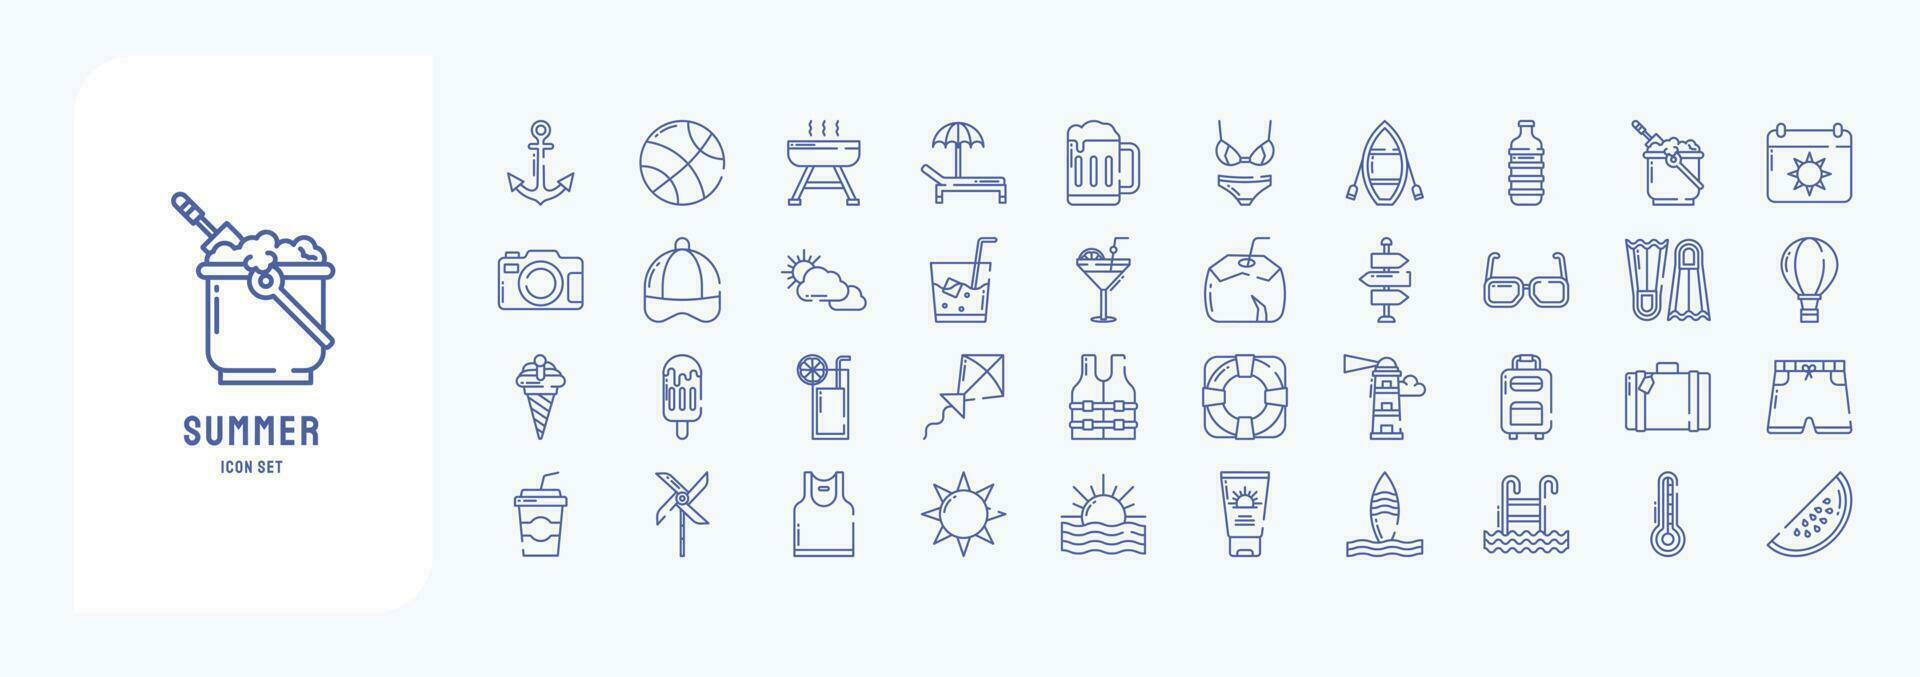 colección de íconos relacionado a verano y día festivo, incluso íconos me gusta ancla, pelota, barbacoa, playa silla y más vector